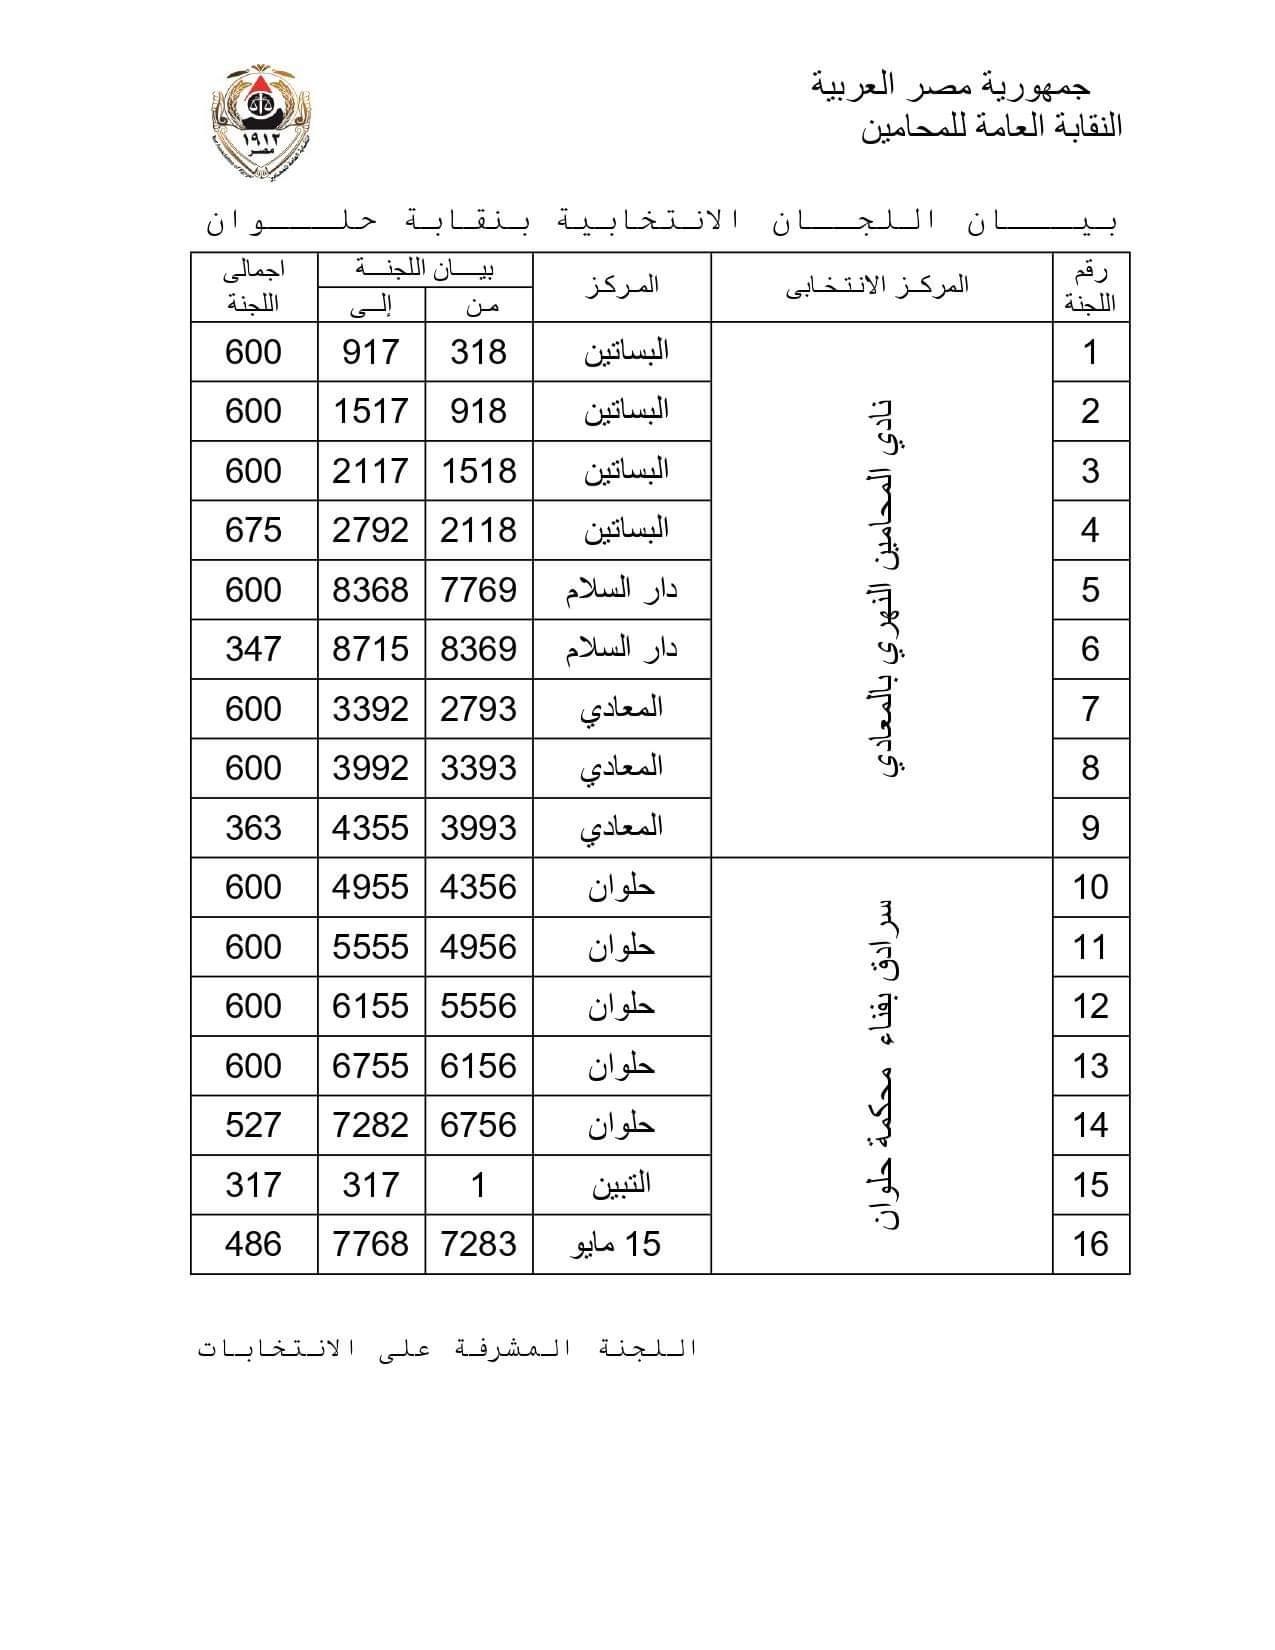 نتيجة المرحلة الأولى فى انتخابات فرعيات المحامين بـ 16 محافظة  (3)